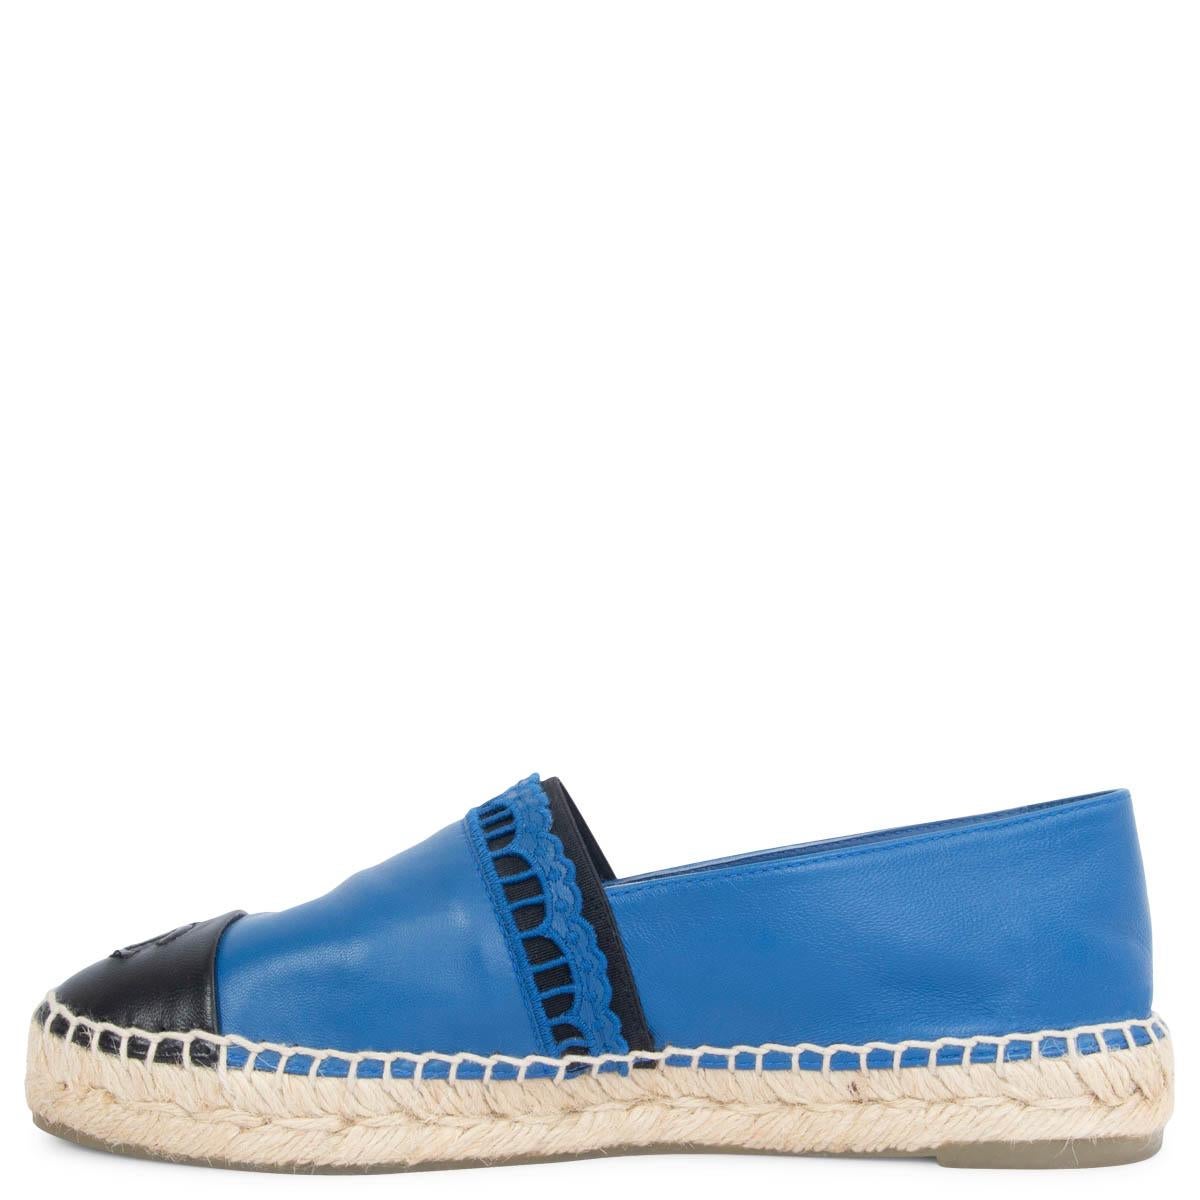 Blue CHANEL blue & black leather Espadrilles Flats Shoes 37 For Sale